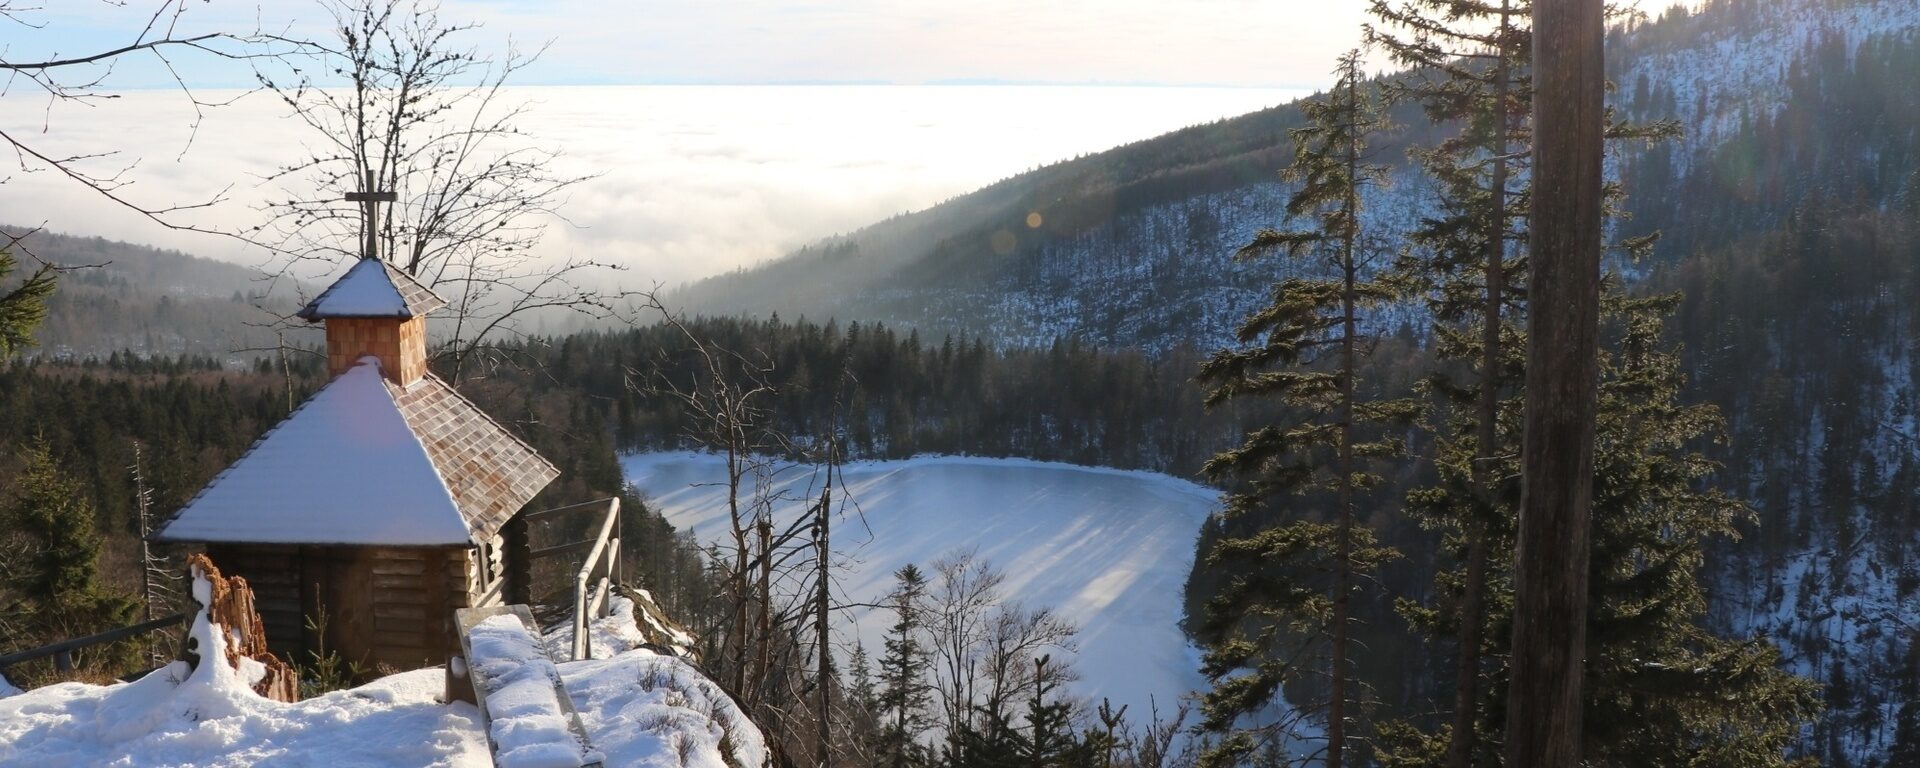 Mit Blick auf den gefrorenen Rachelsee steht man auf einer verschneiten Anhöhe in der Nähe der Kapelle. Im Hintergund liegt dichter Nebel.